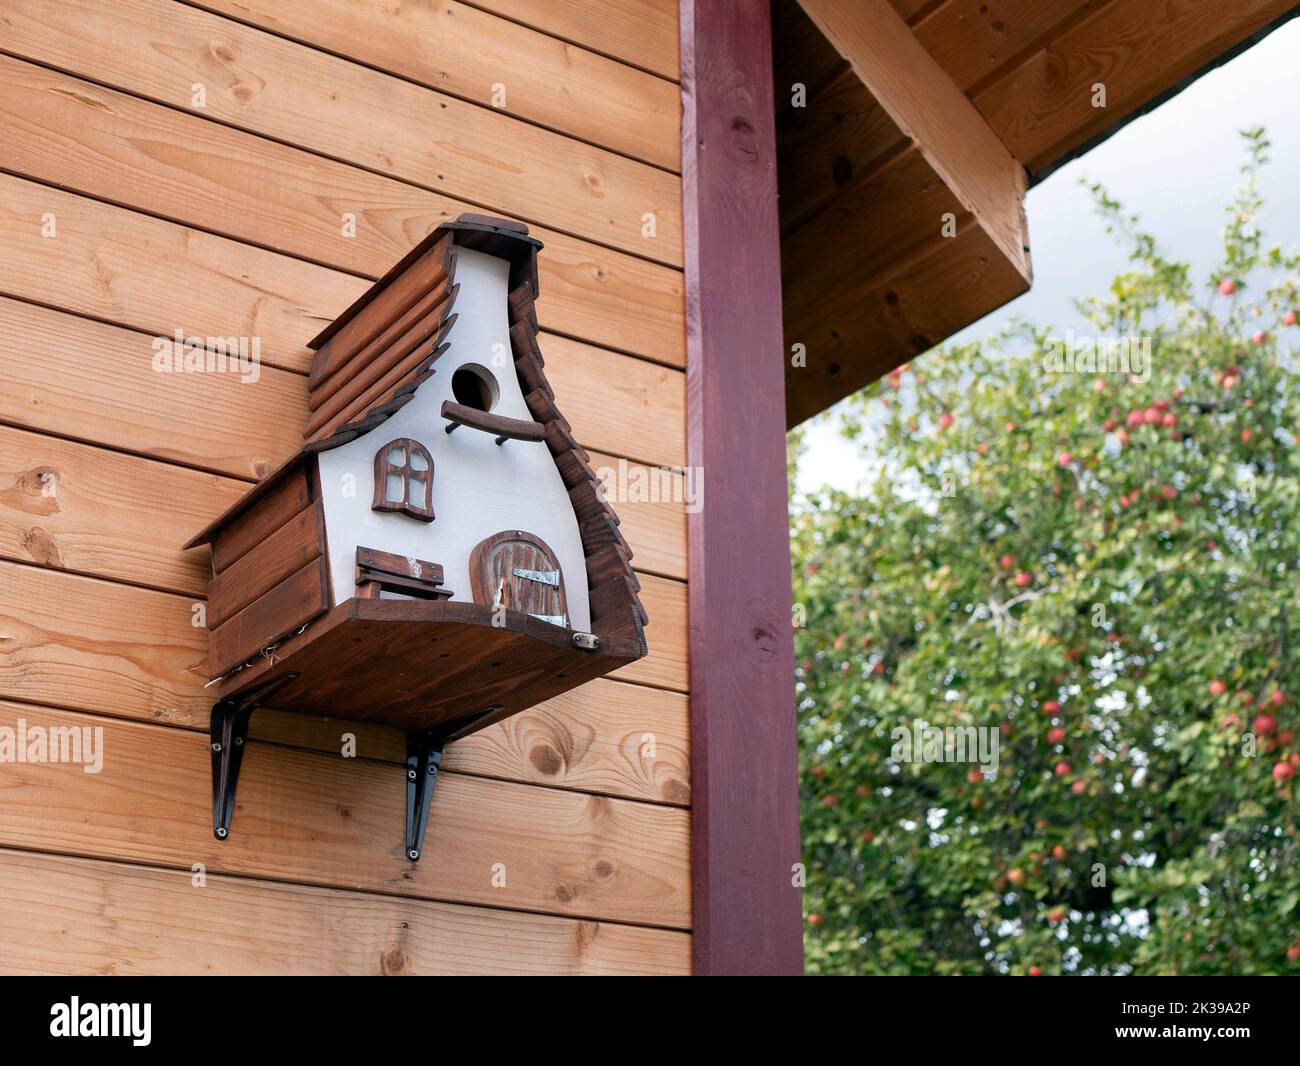 Maison d'oiseau en bois suspendu sur le mur d'un bâtiment, foyer sélectif. Concept de soins pour les animaux, bien-être des oiseaux Banque D'Images